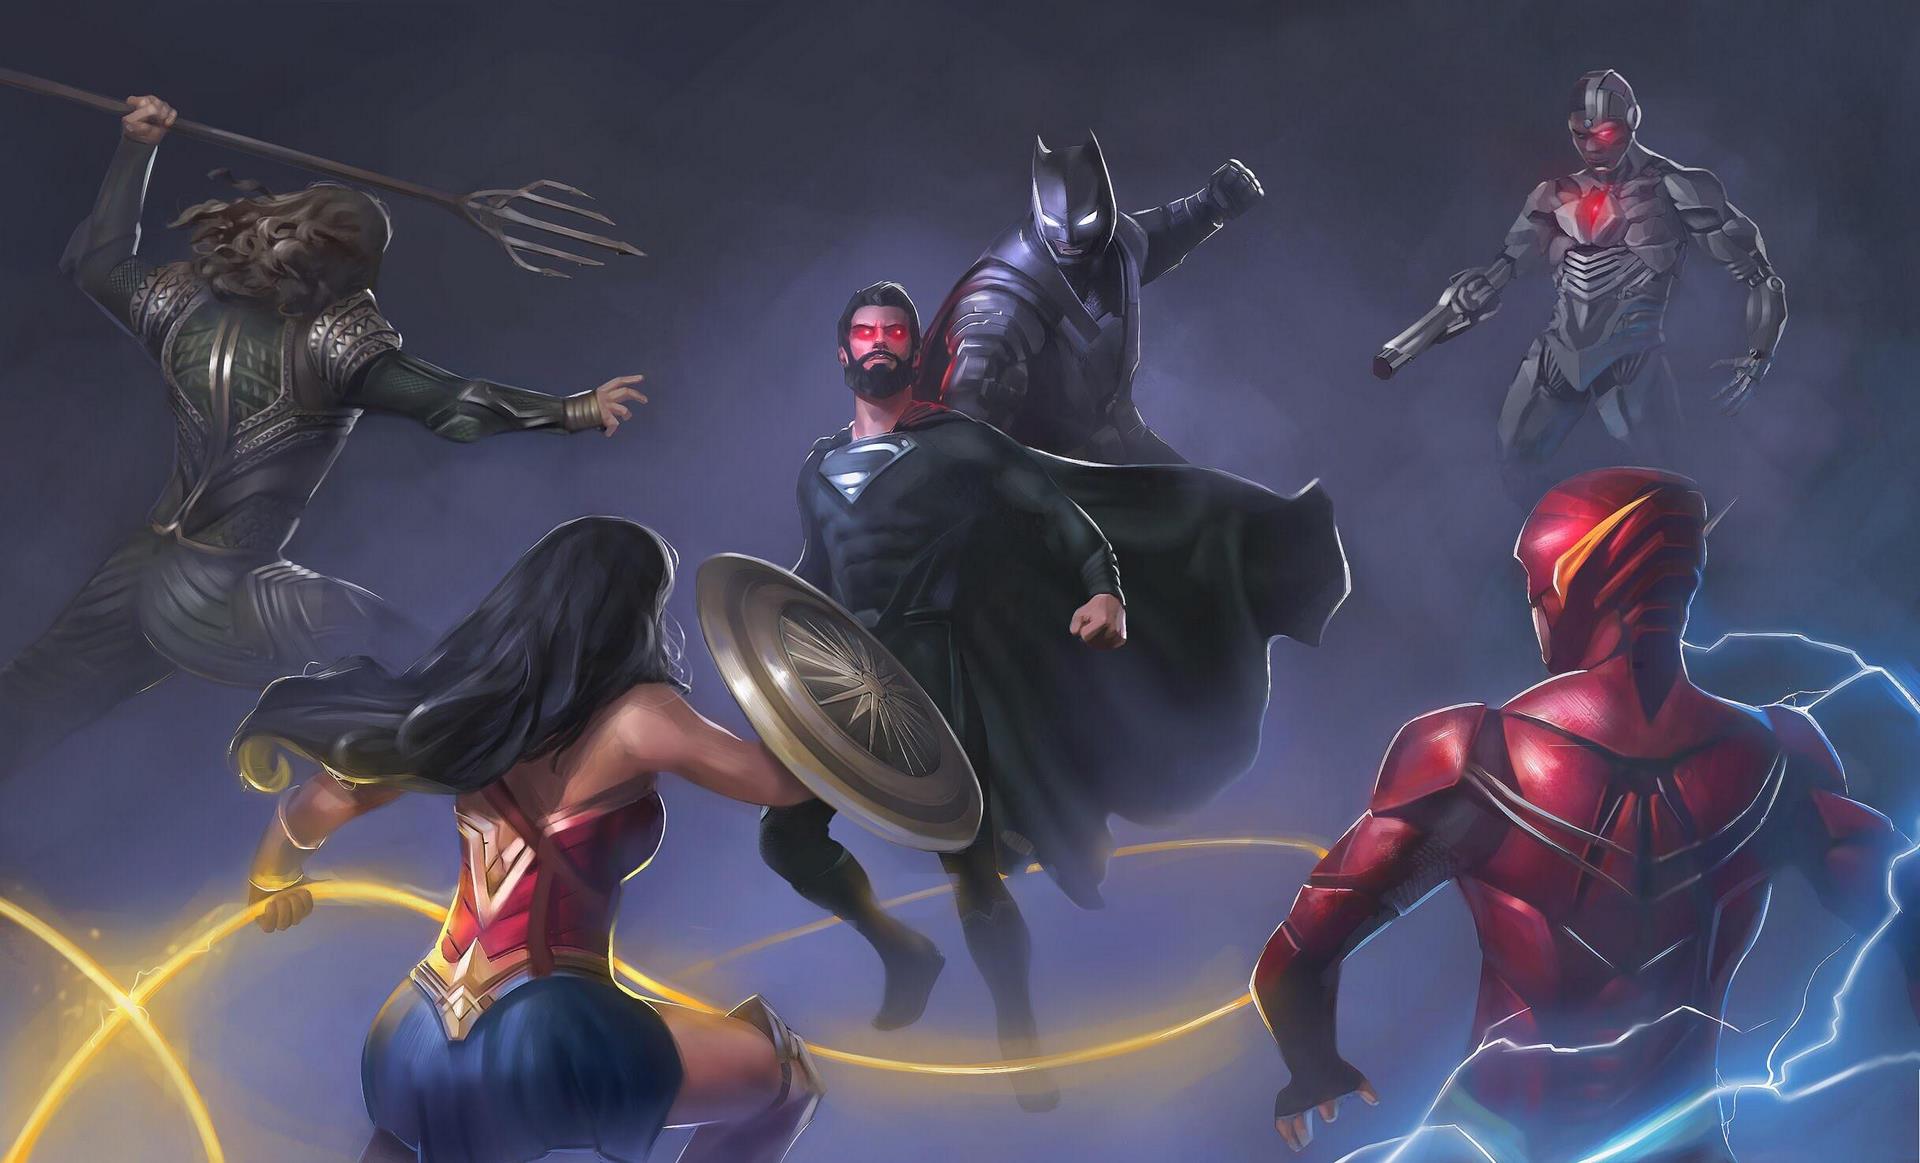 ۱۰ بار که سوپرمن با قهرمانان دیگر جنگید